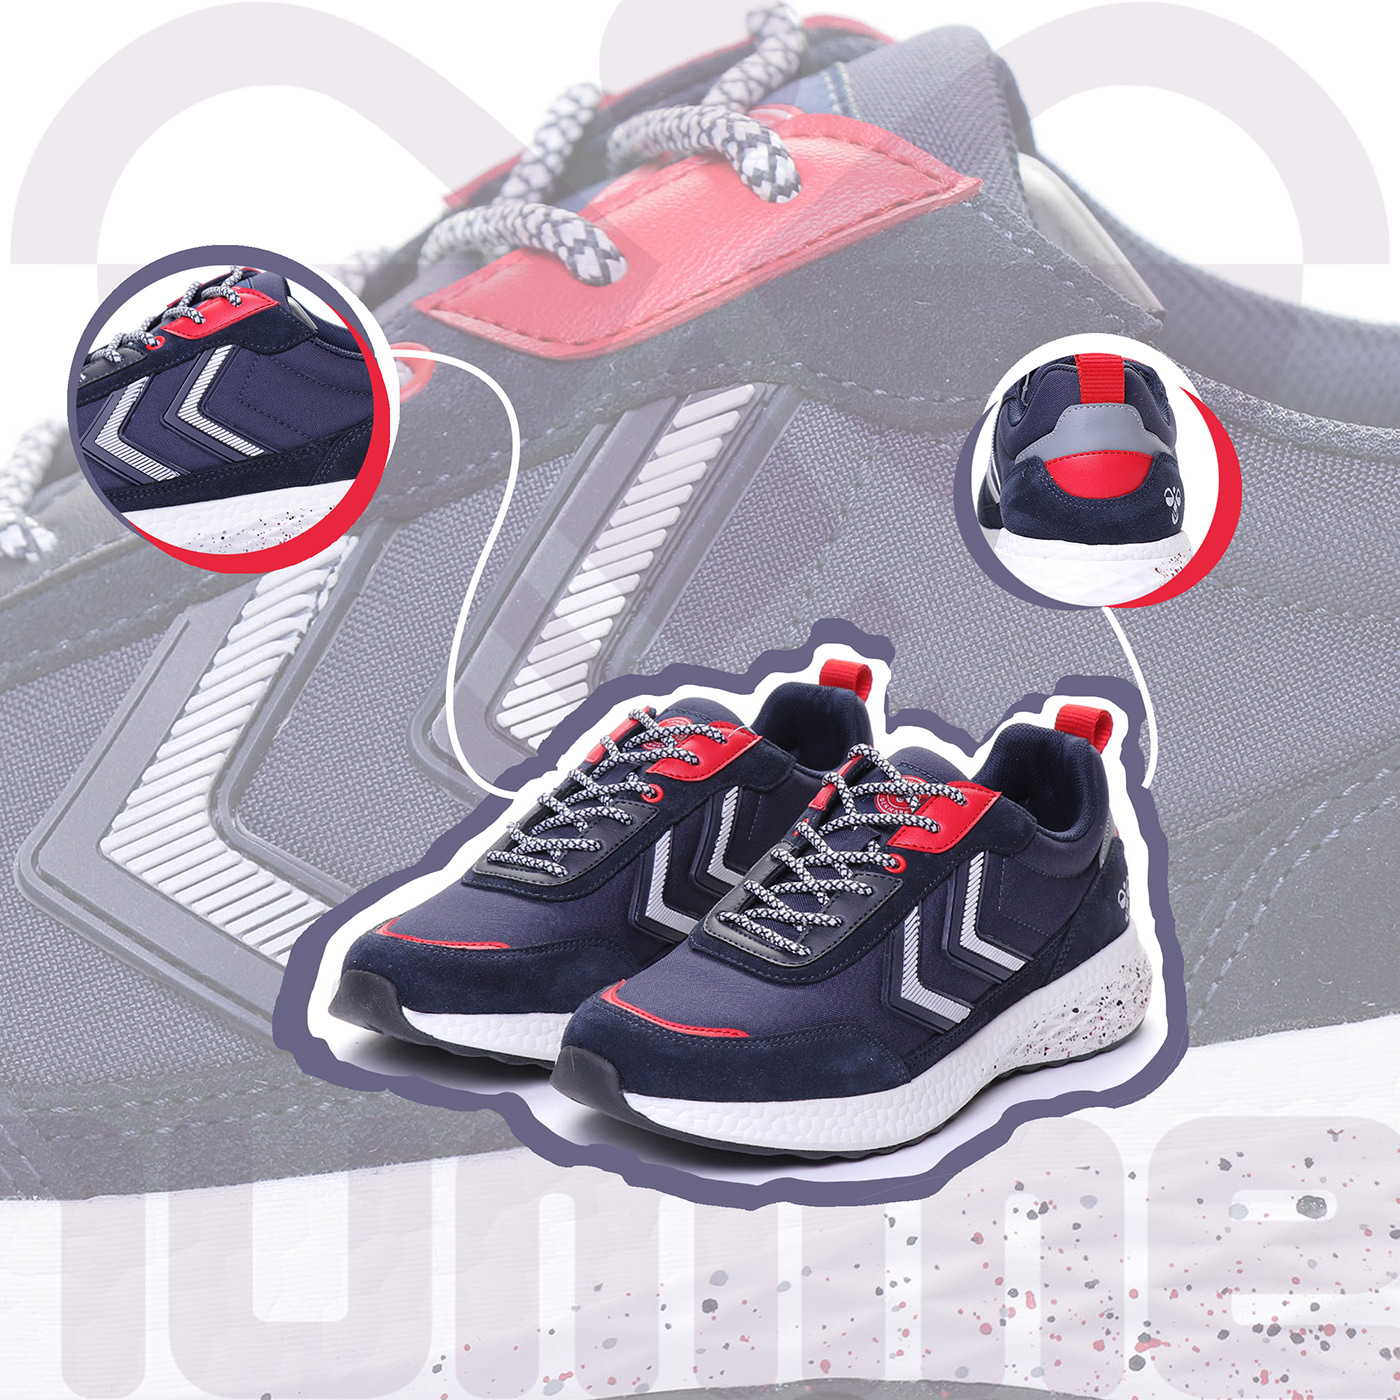 activewear Fashion  footwear product design  shoes sneaker SneakerDesign Sportswear